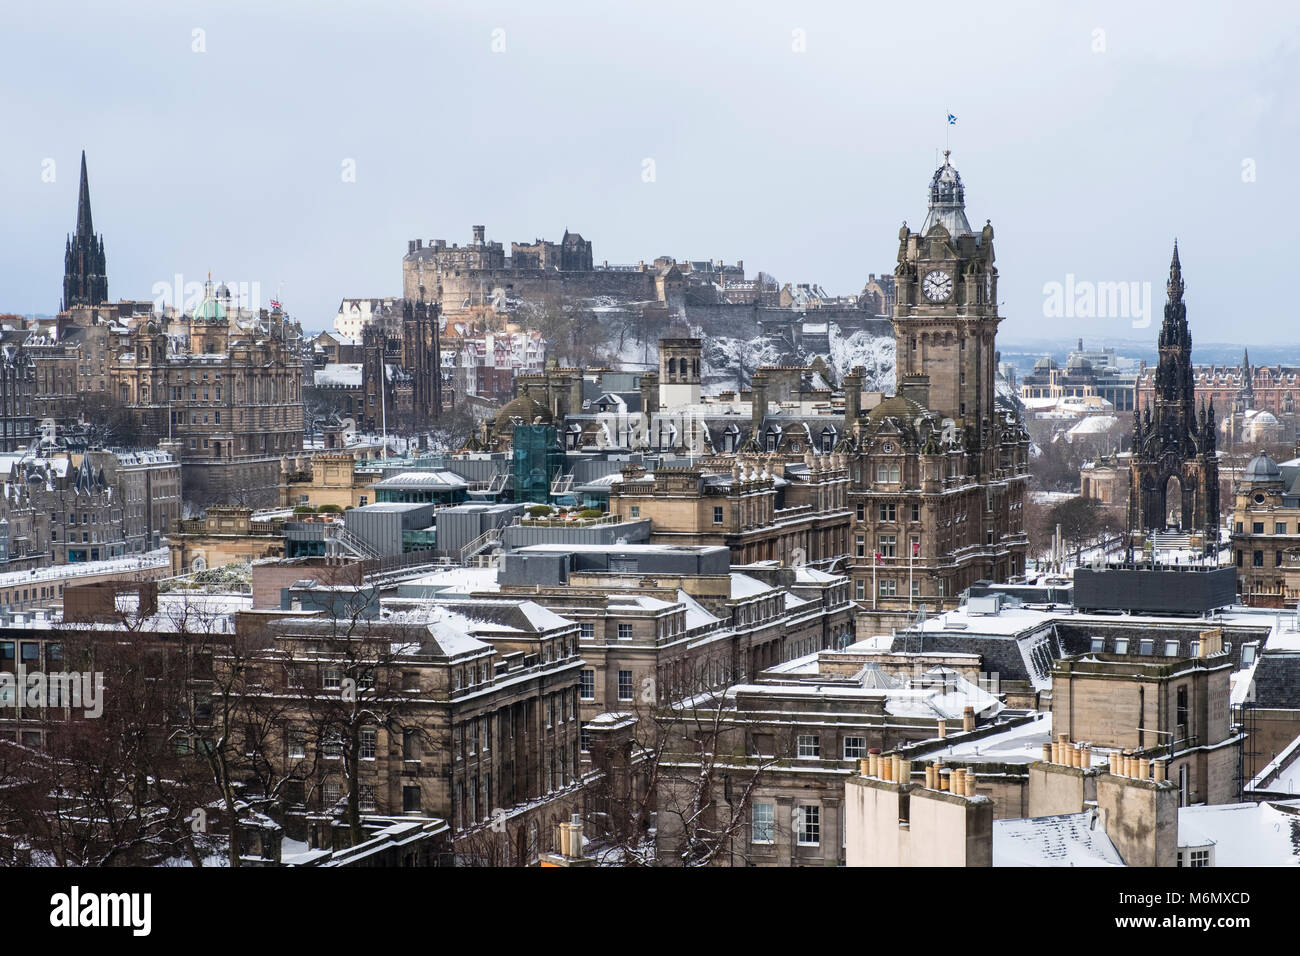 Vue depuis Calton Hill sur la ville d'Édimbourg après de fortes chutes de neige , Ecosse, Royaume-Uni Banque D'Images